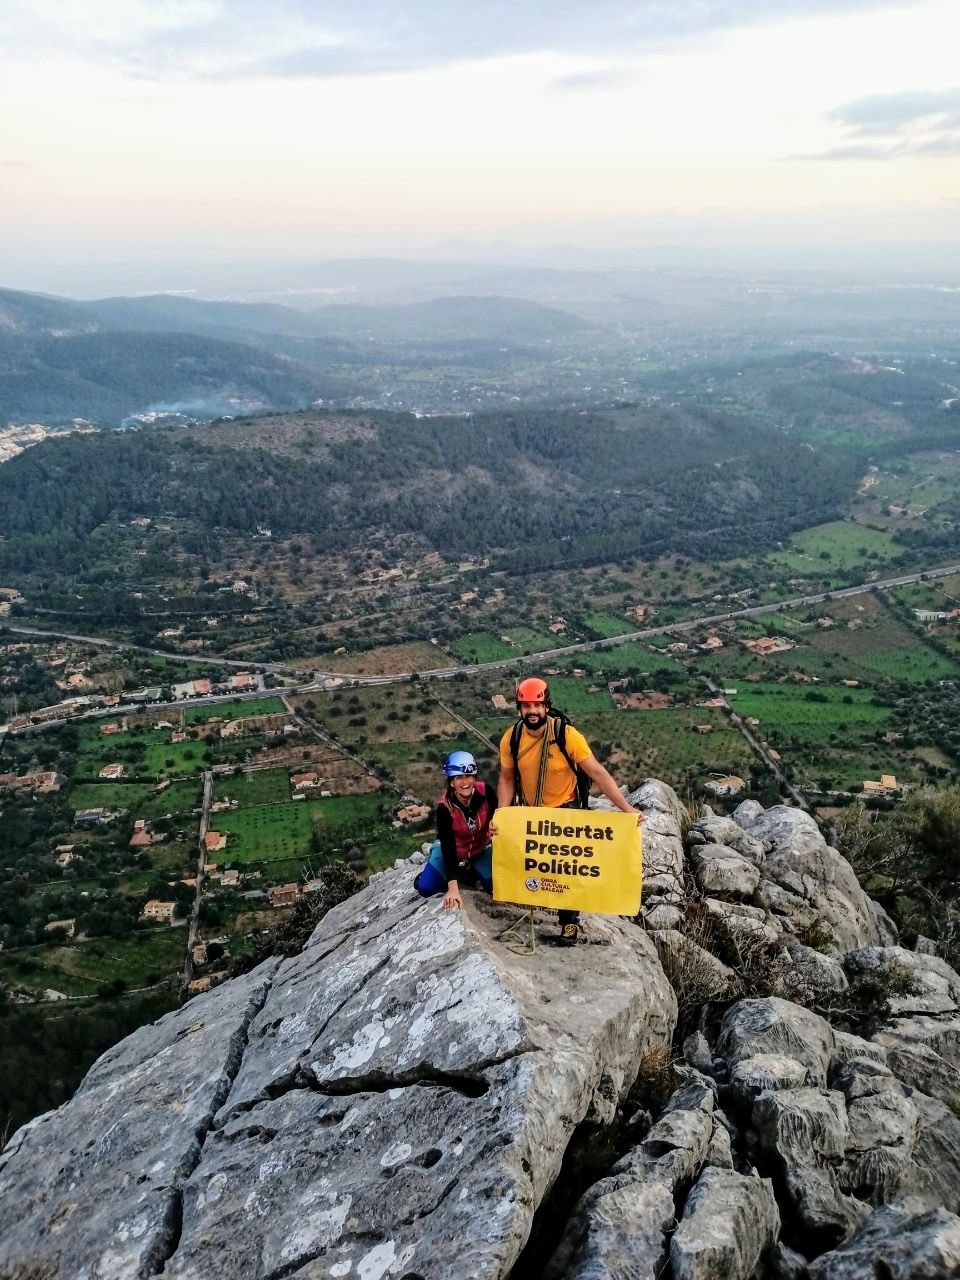 Mallorca se solidariza con los presos políticos y exiliados